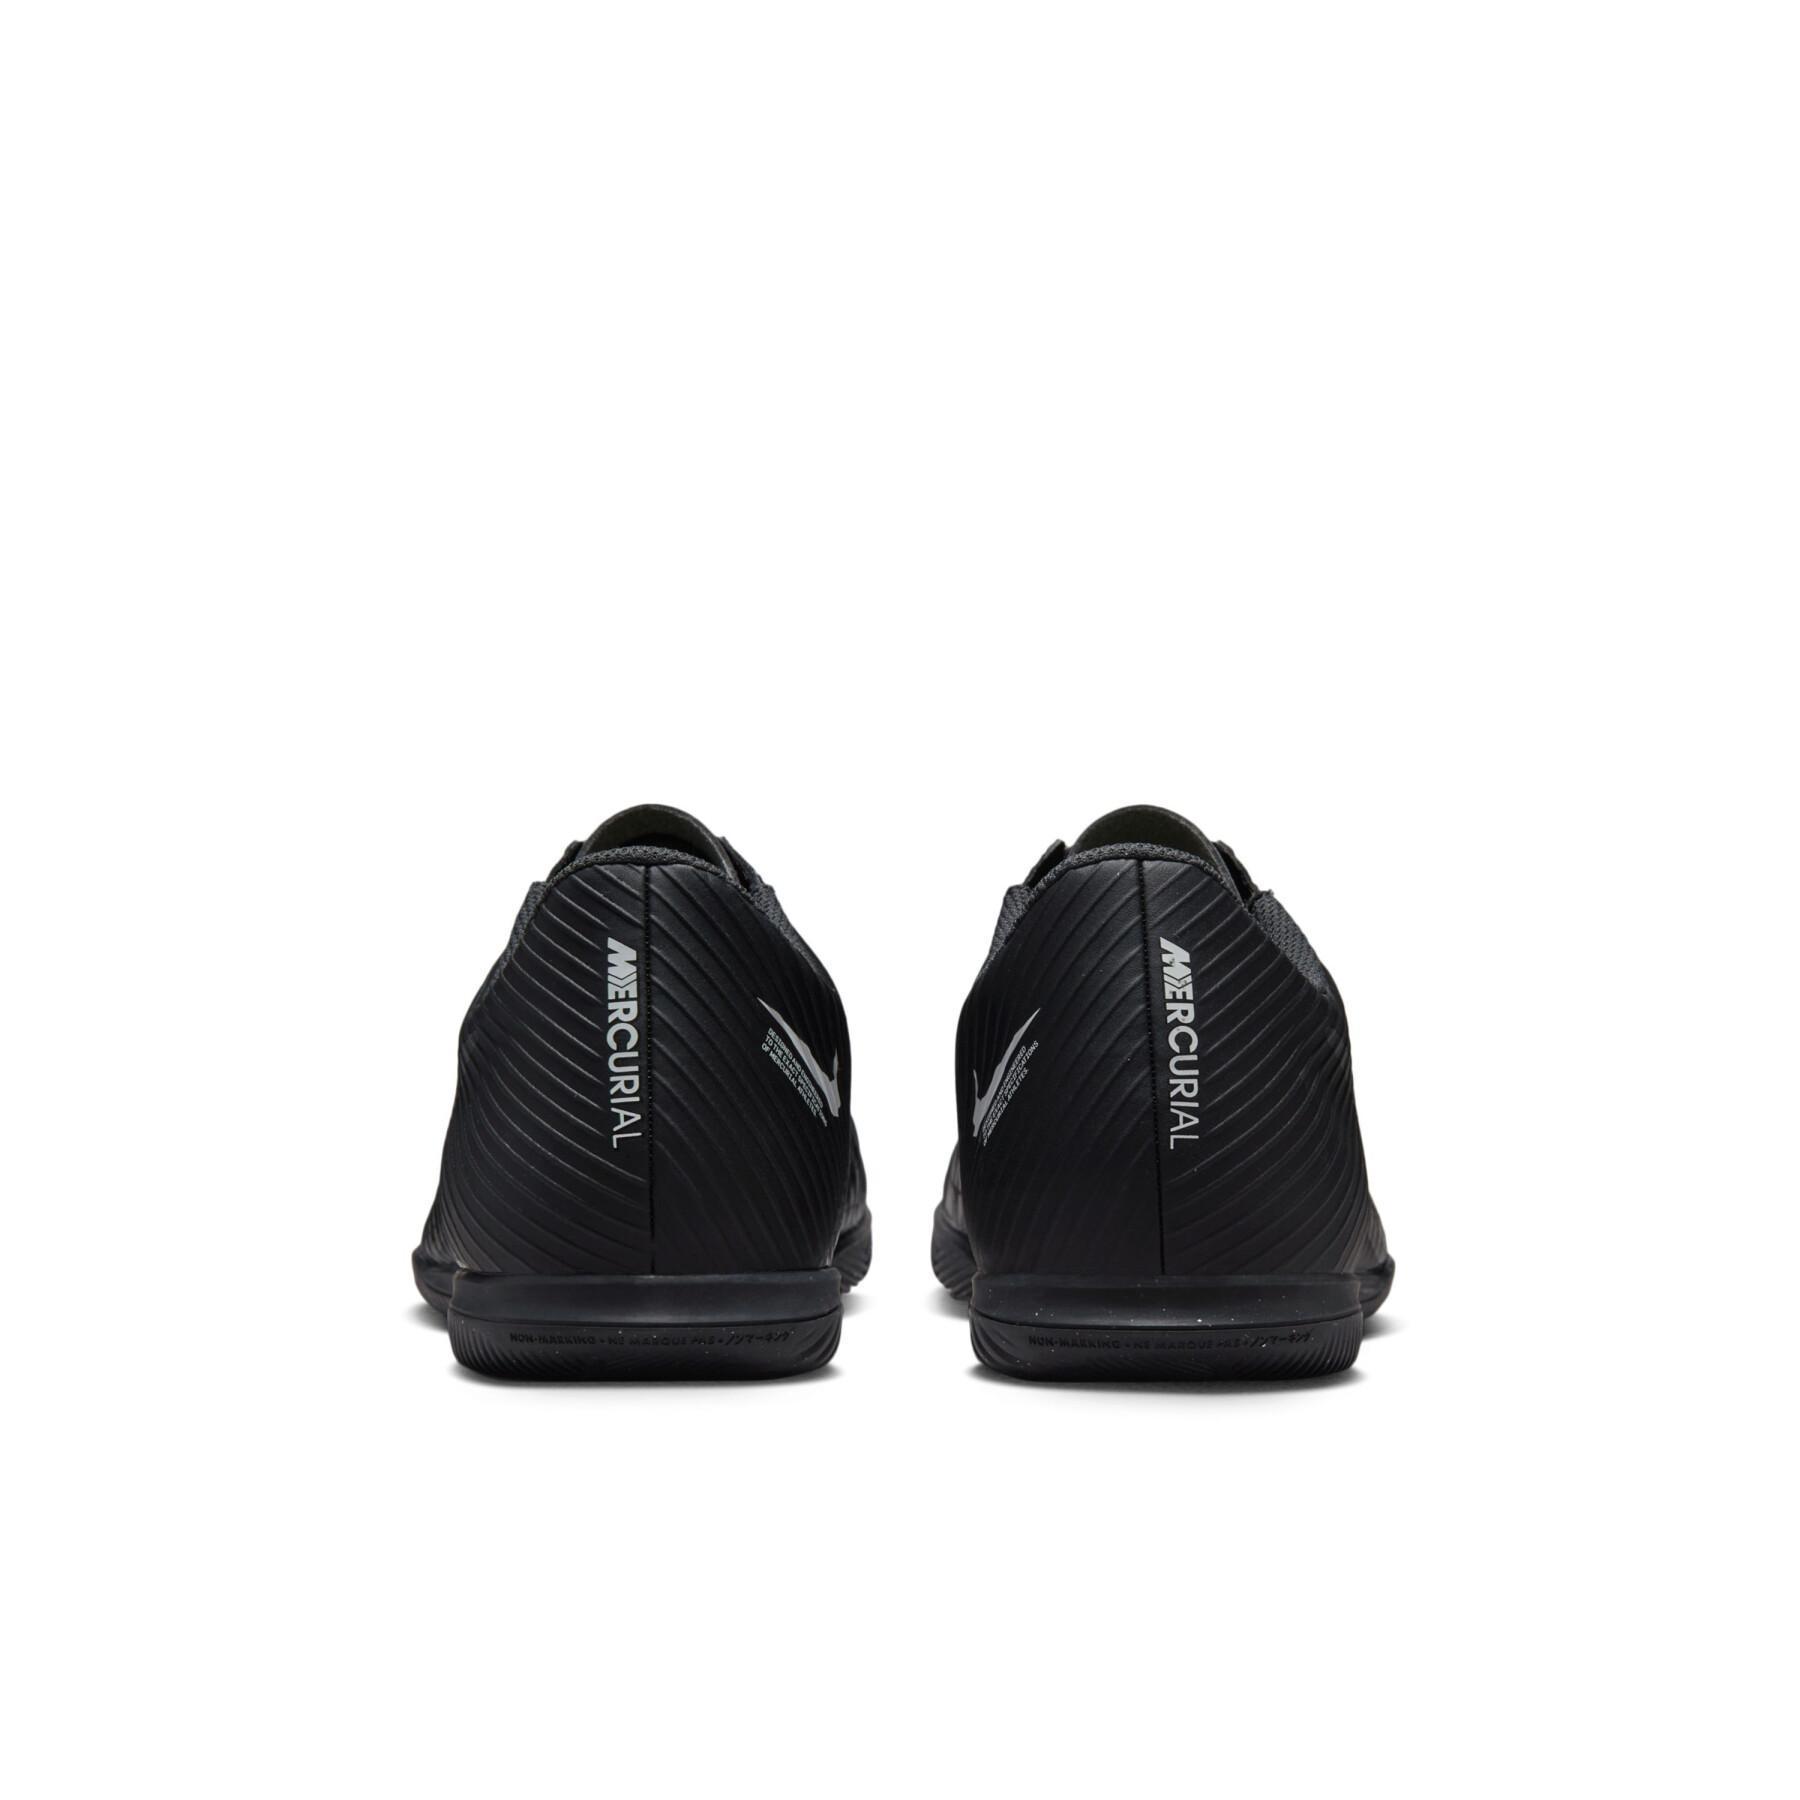 Buty piłkarskie Nike Mercurial Vapor 15 Club IC - Shadow Black Pack